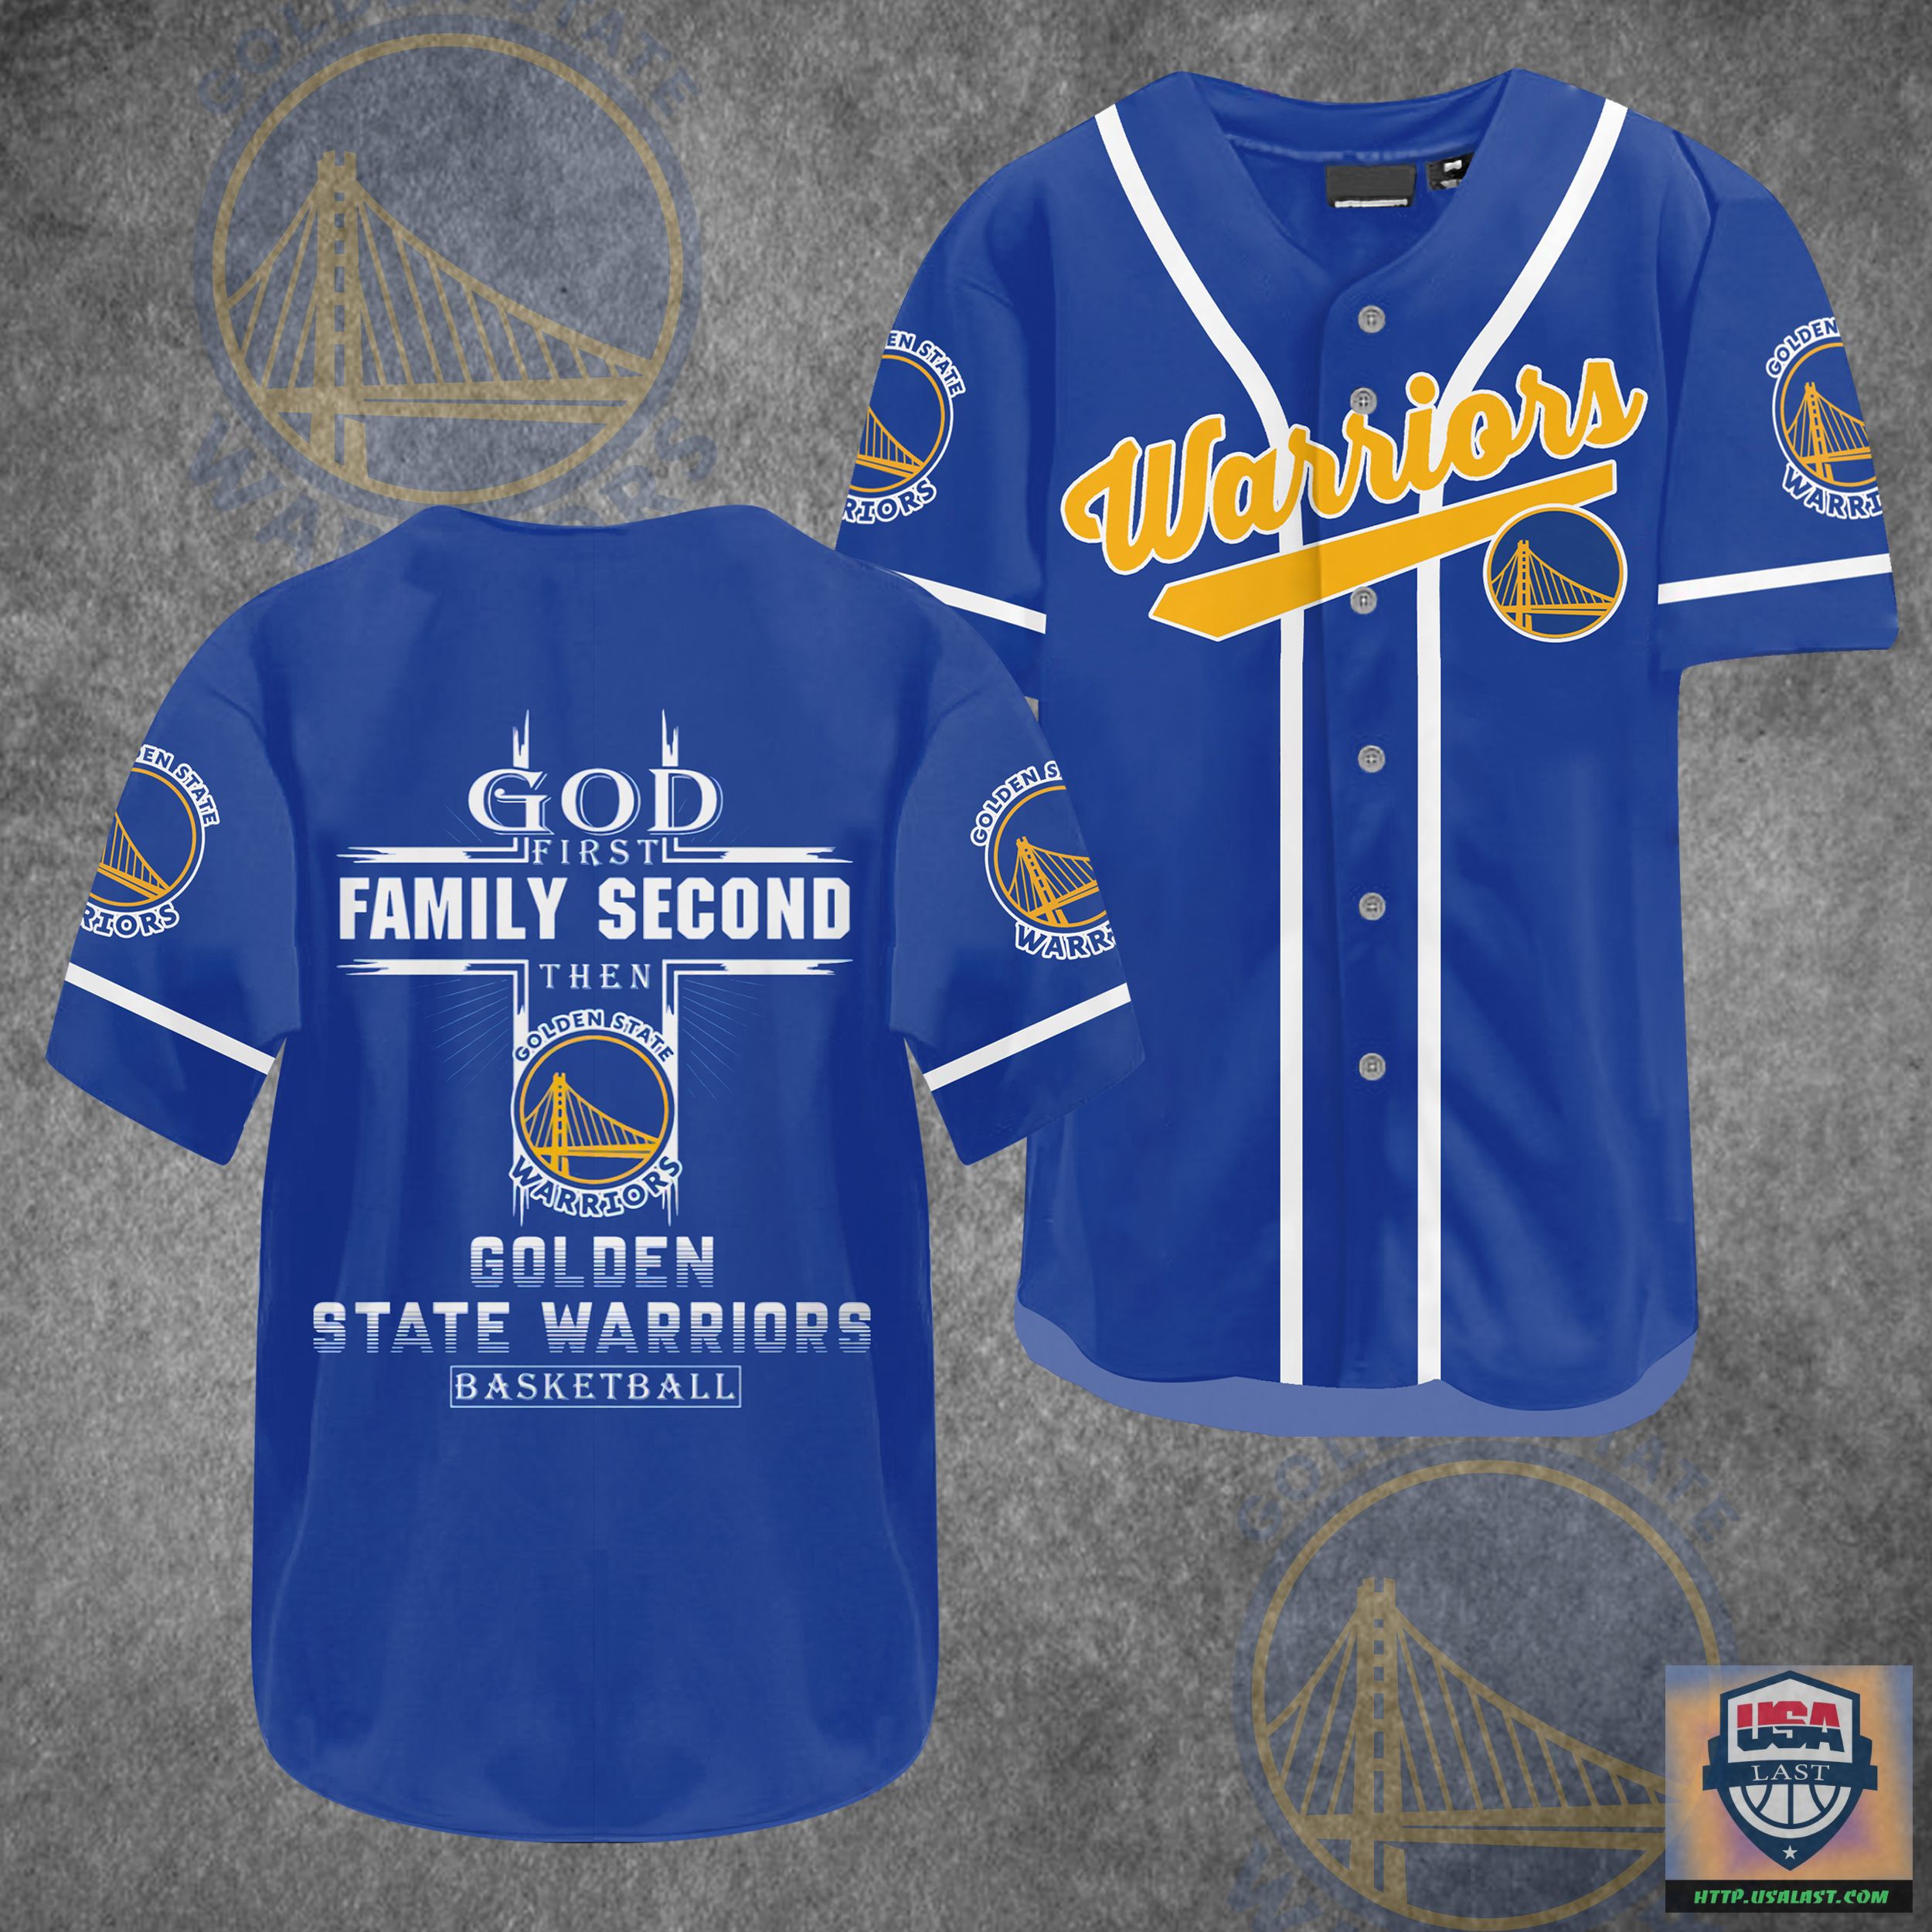 God First Family Second Then Golden State Warriors Baseball Jersey Shirt – Usalast